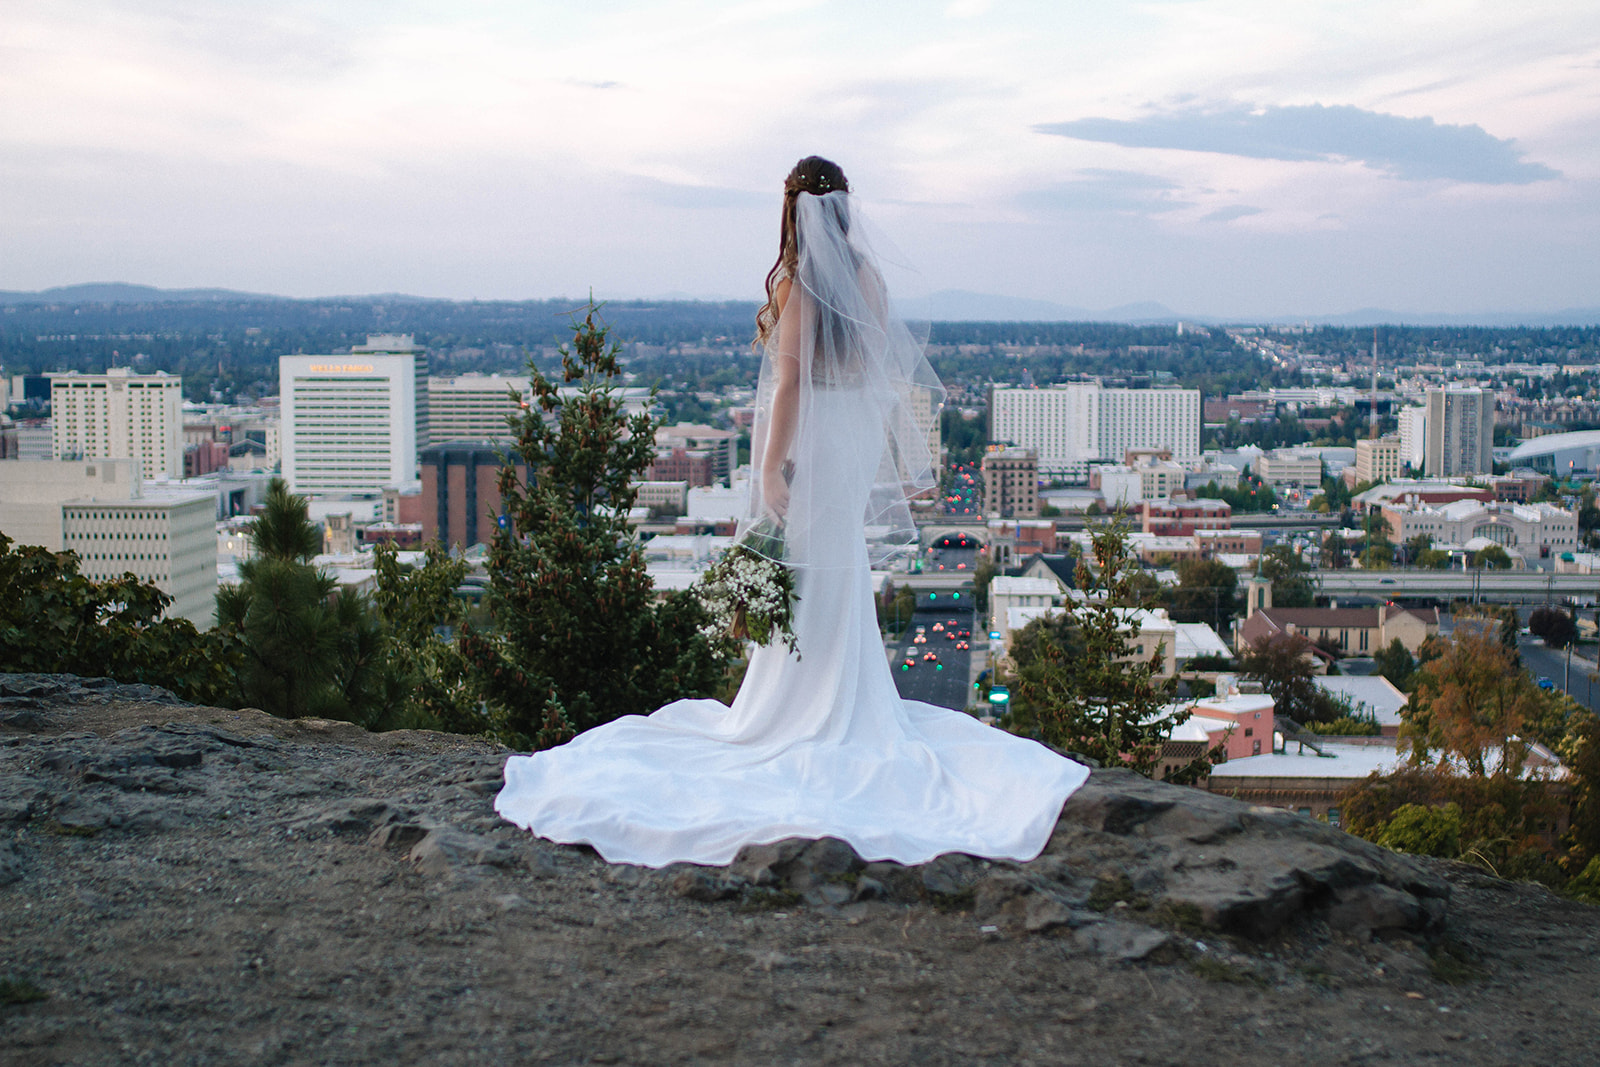 Spokane wedding dress image 15